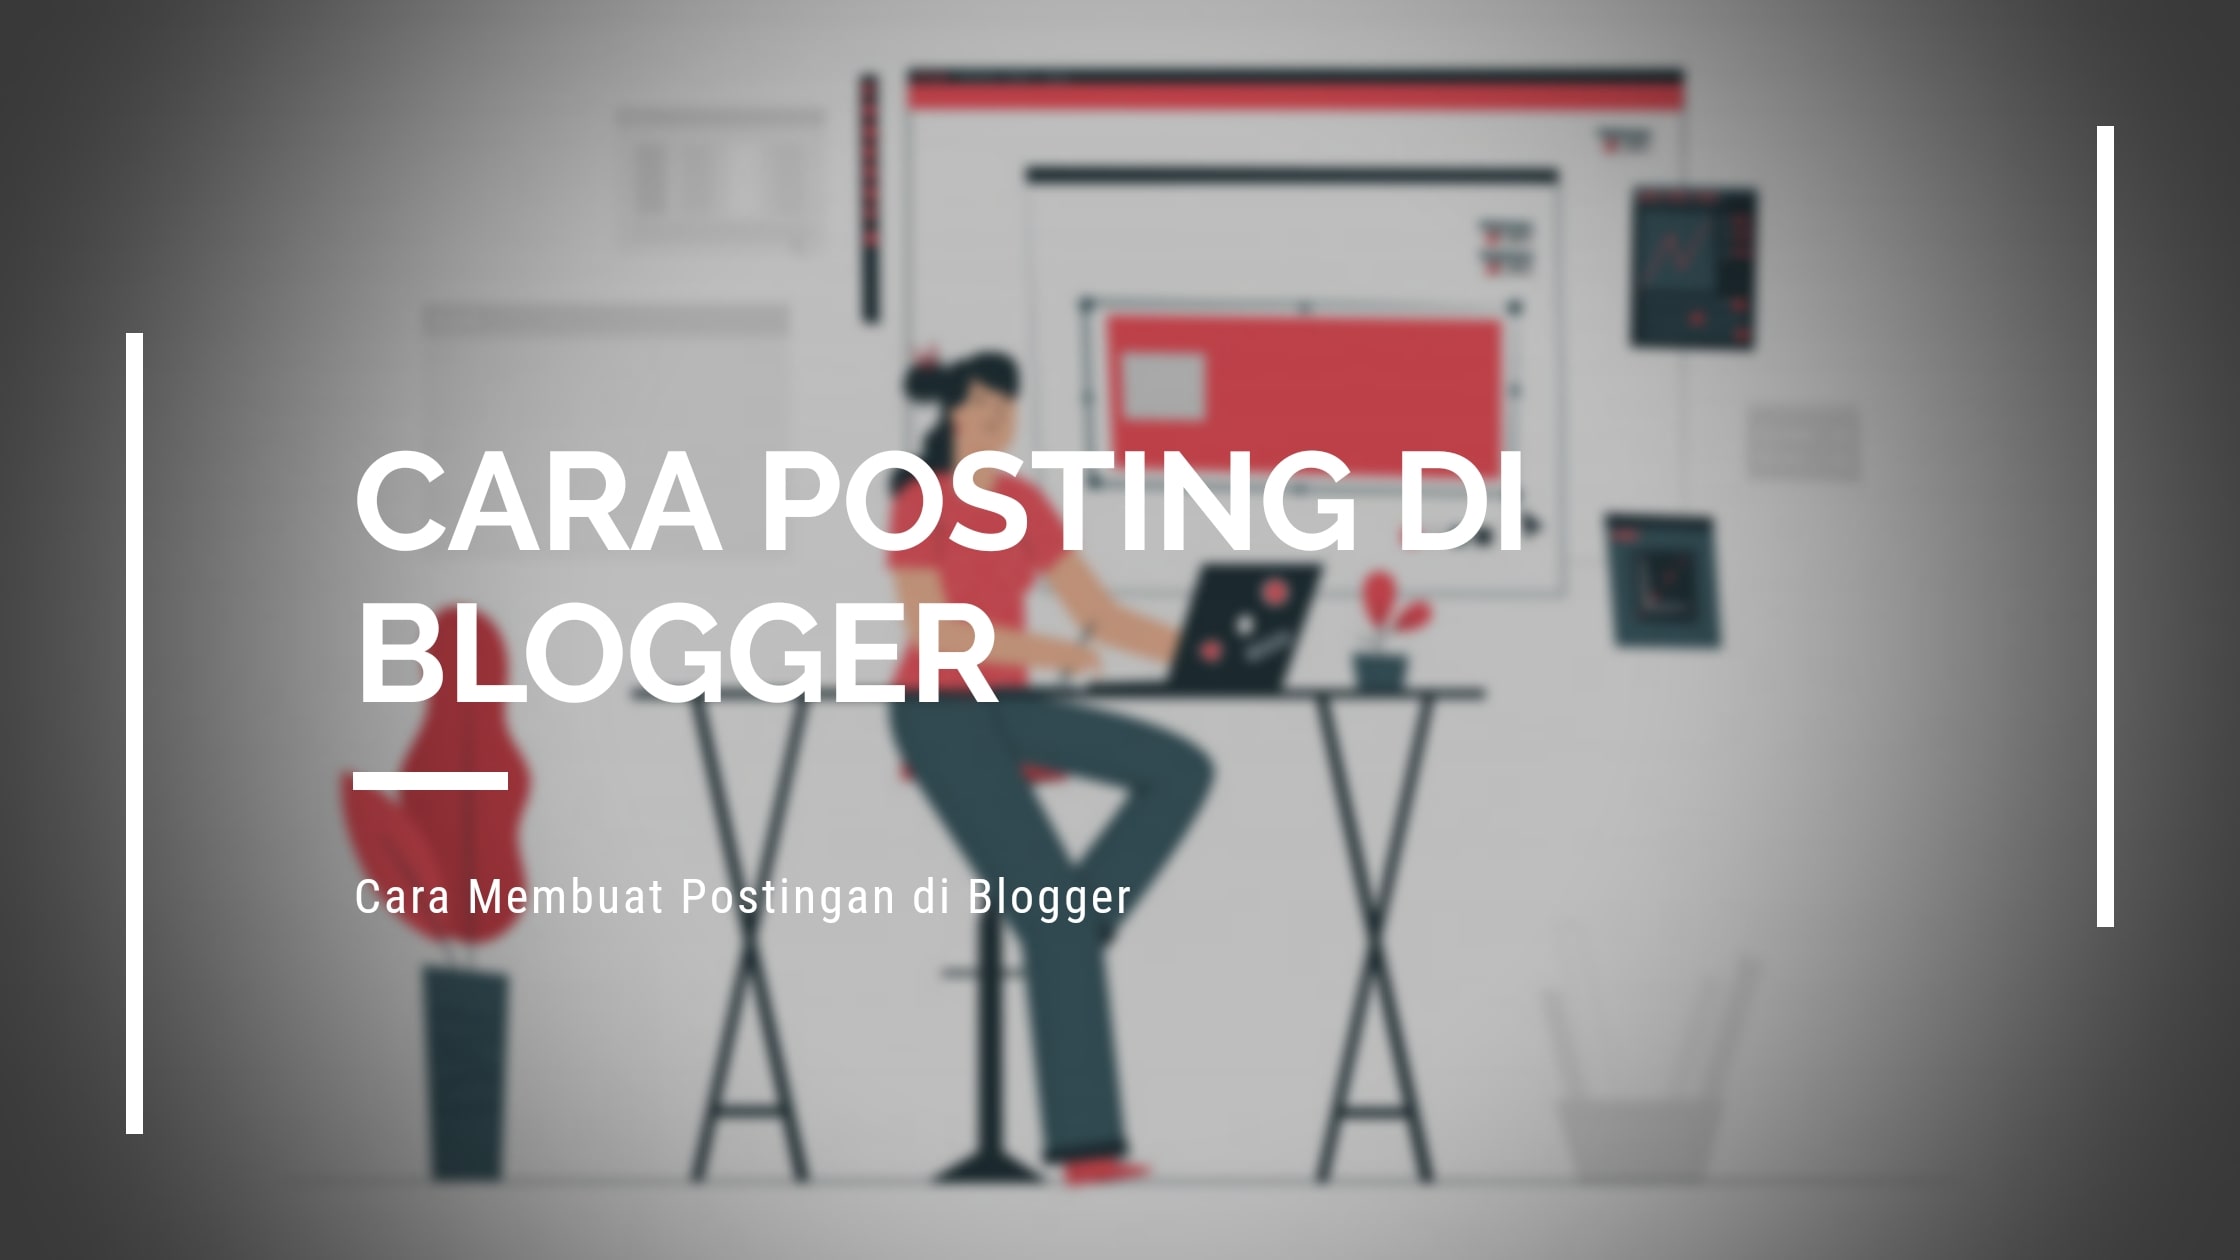 Cara Posting di Blogger